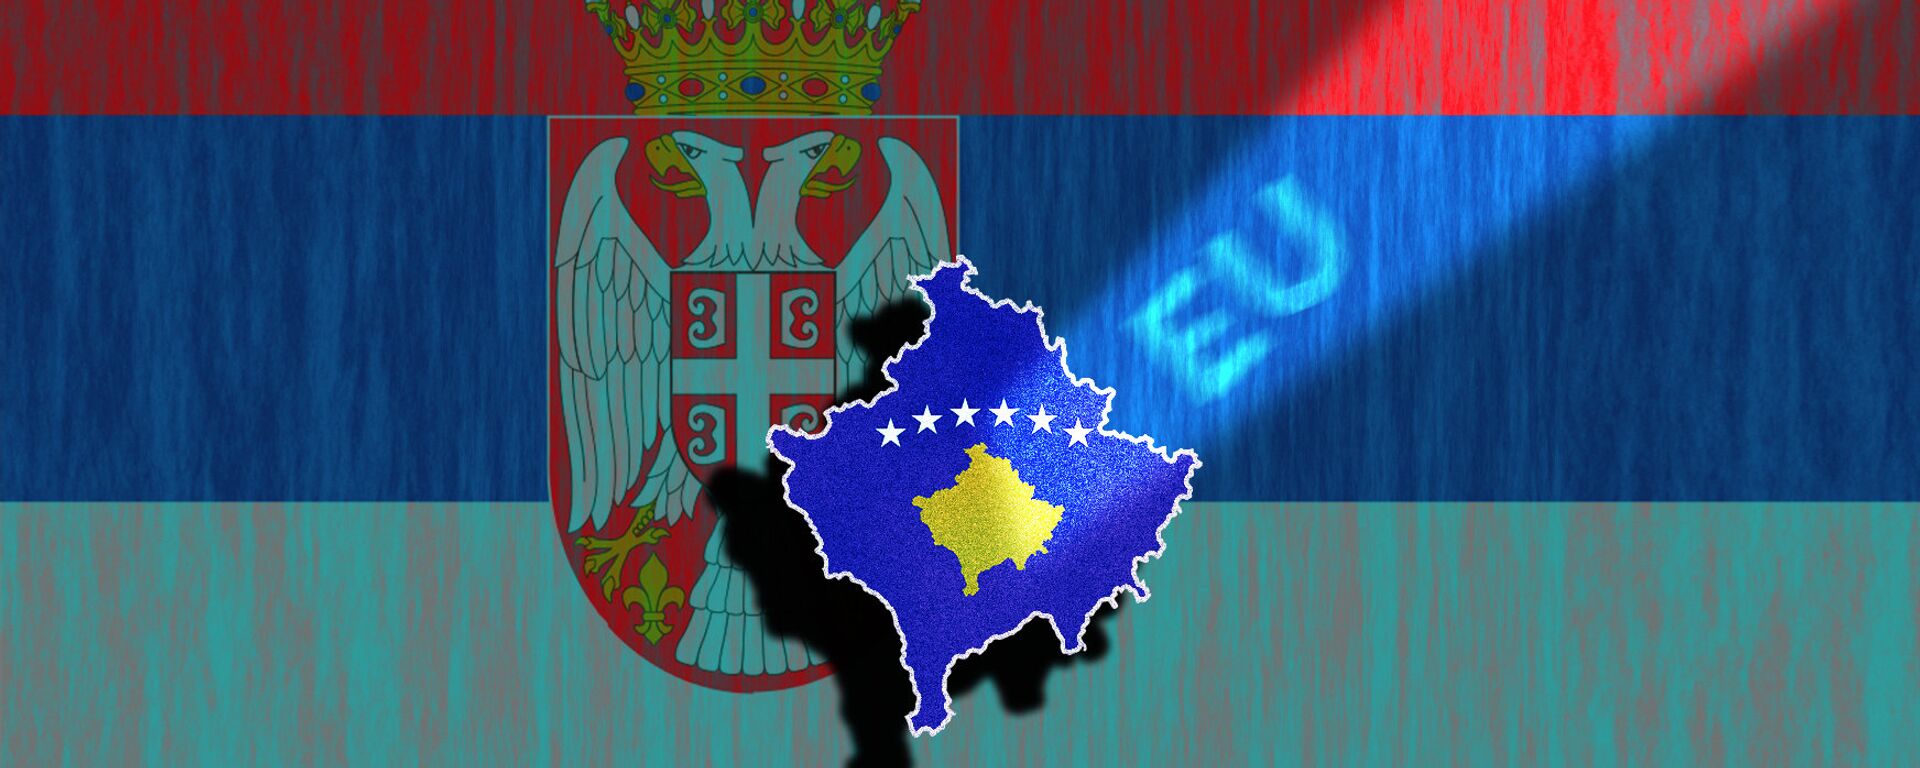 Srbija, Kosovo, EU - ilustracija - Sputnik Srbija, 1920, 27.08.2022